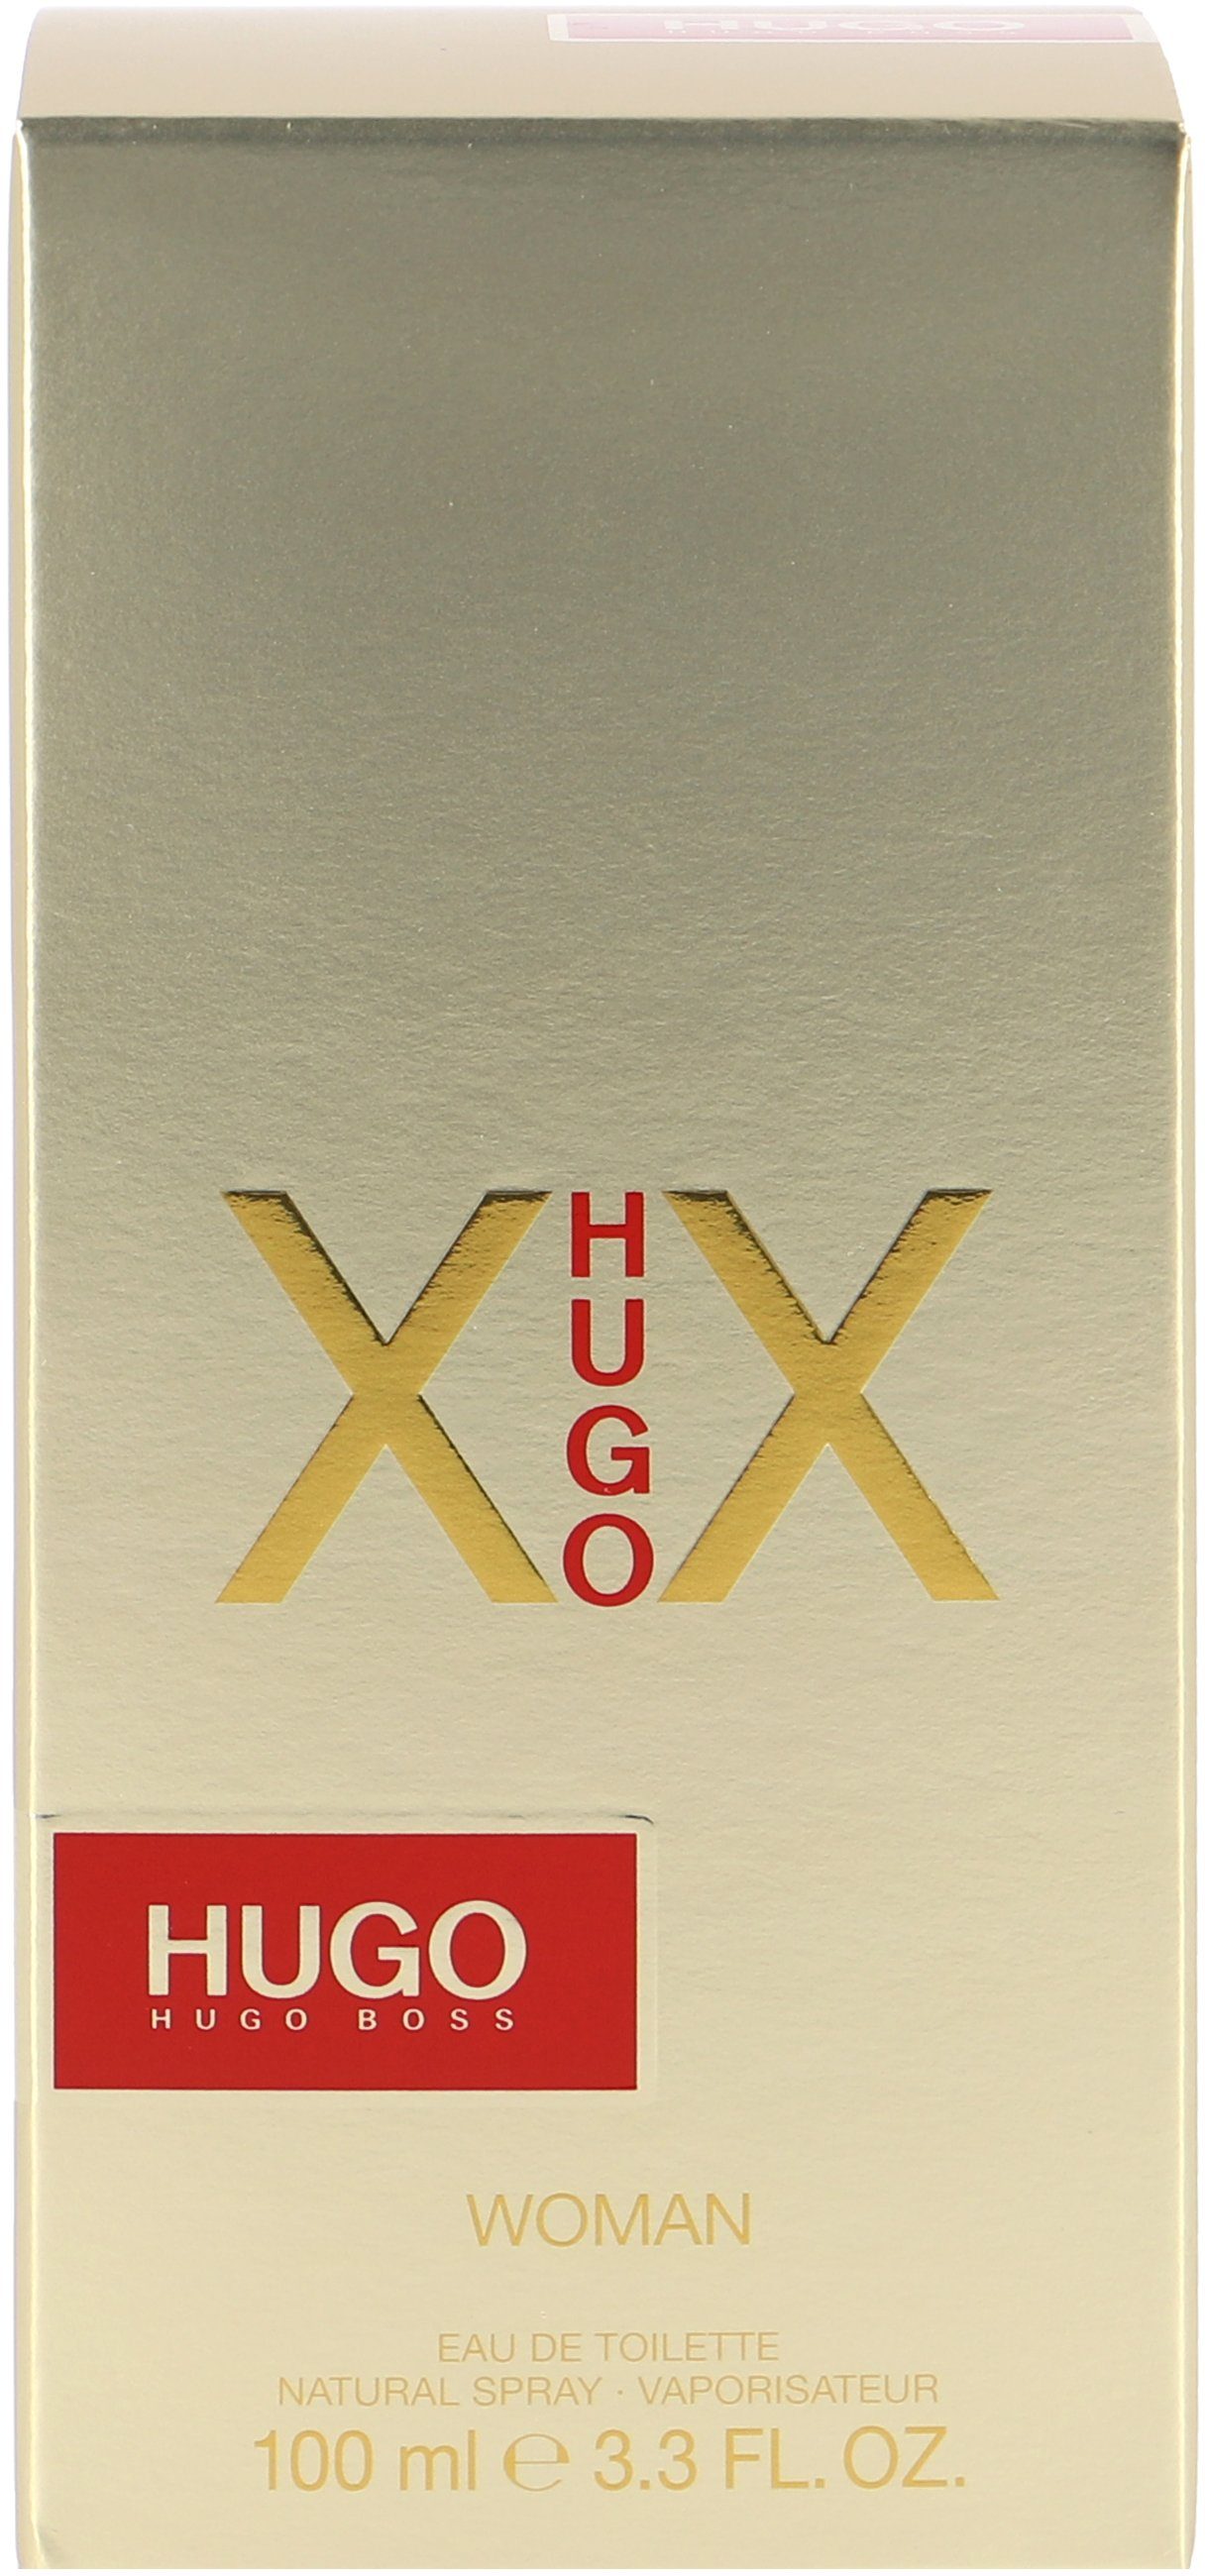 Female HUGO XX Eau Toilette Hugo de